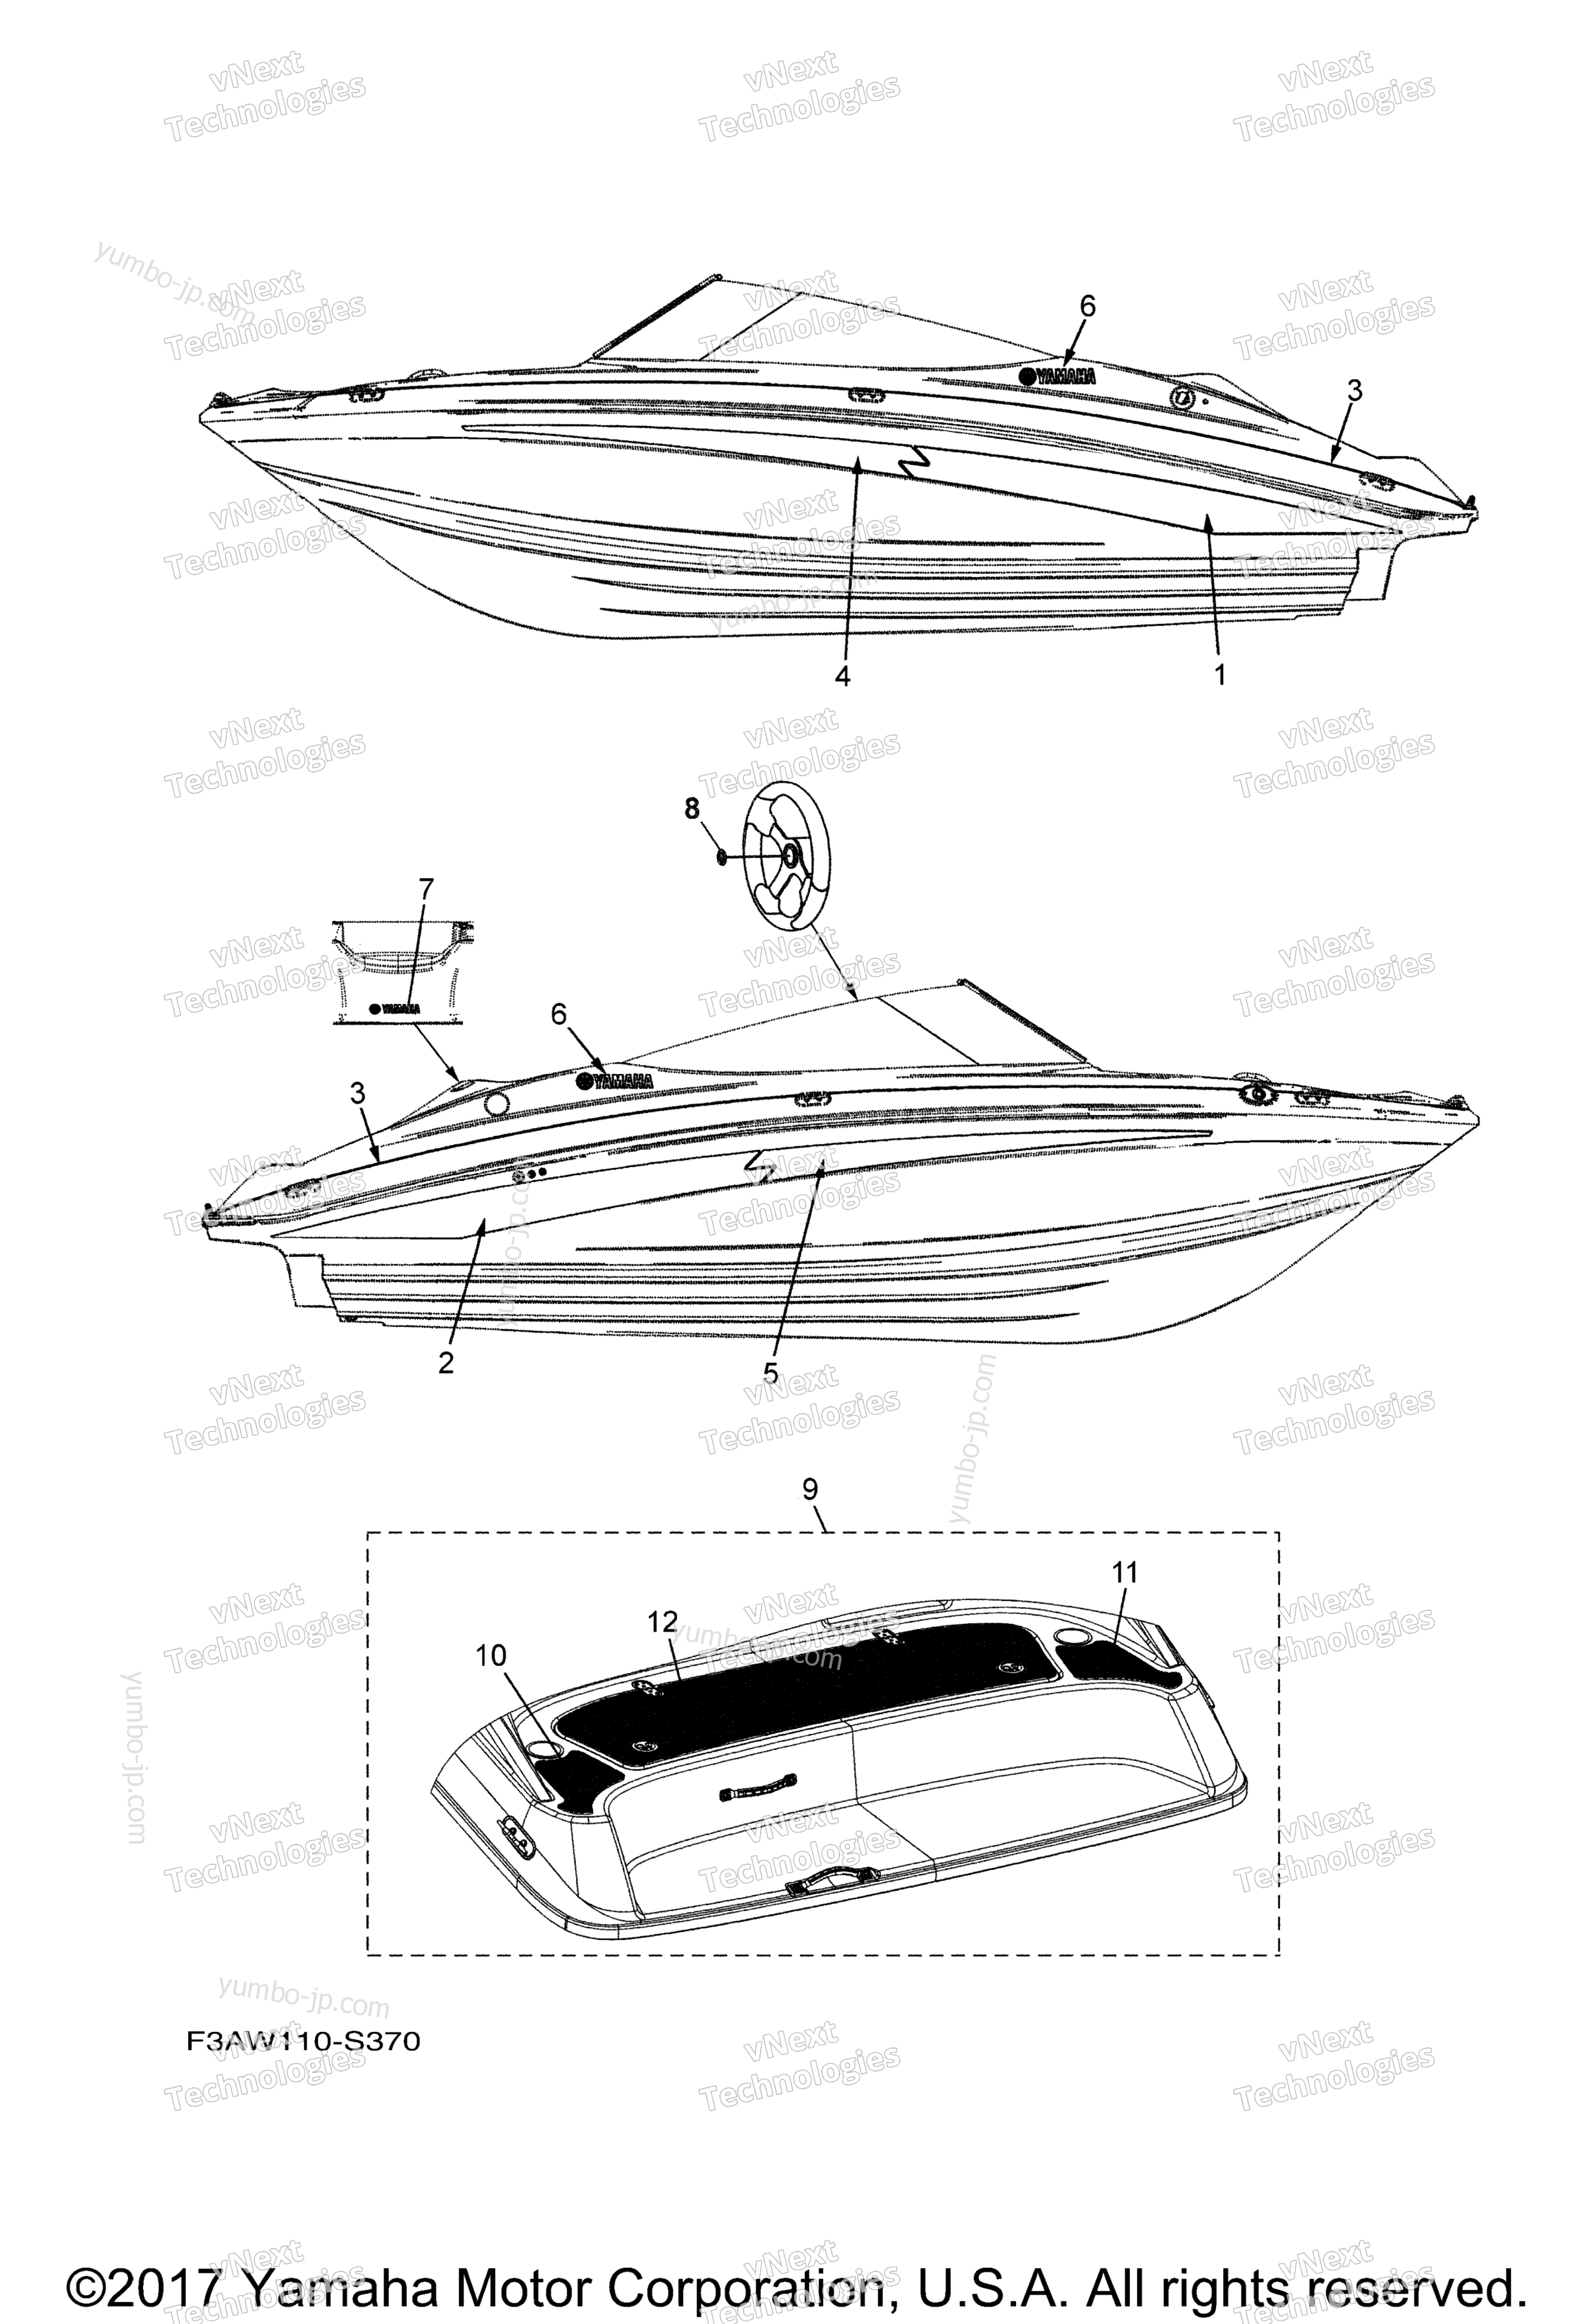 Graphics & Mats for boats YAMAHA SX190 CALIFORNIA (RX1800BLS) CA 2017 year